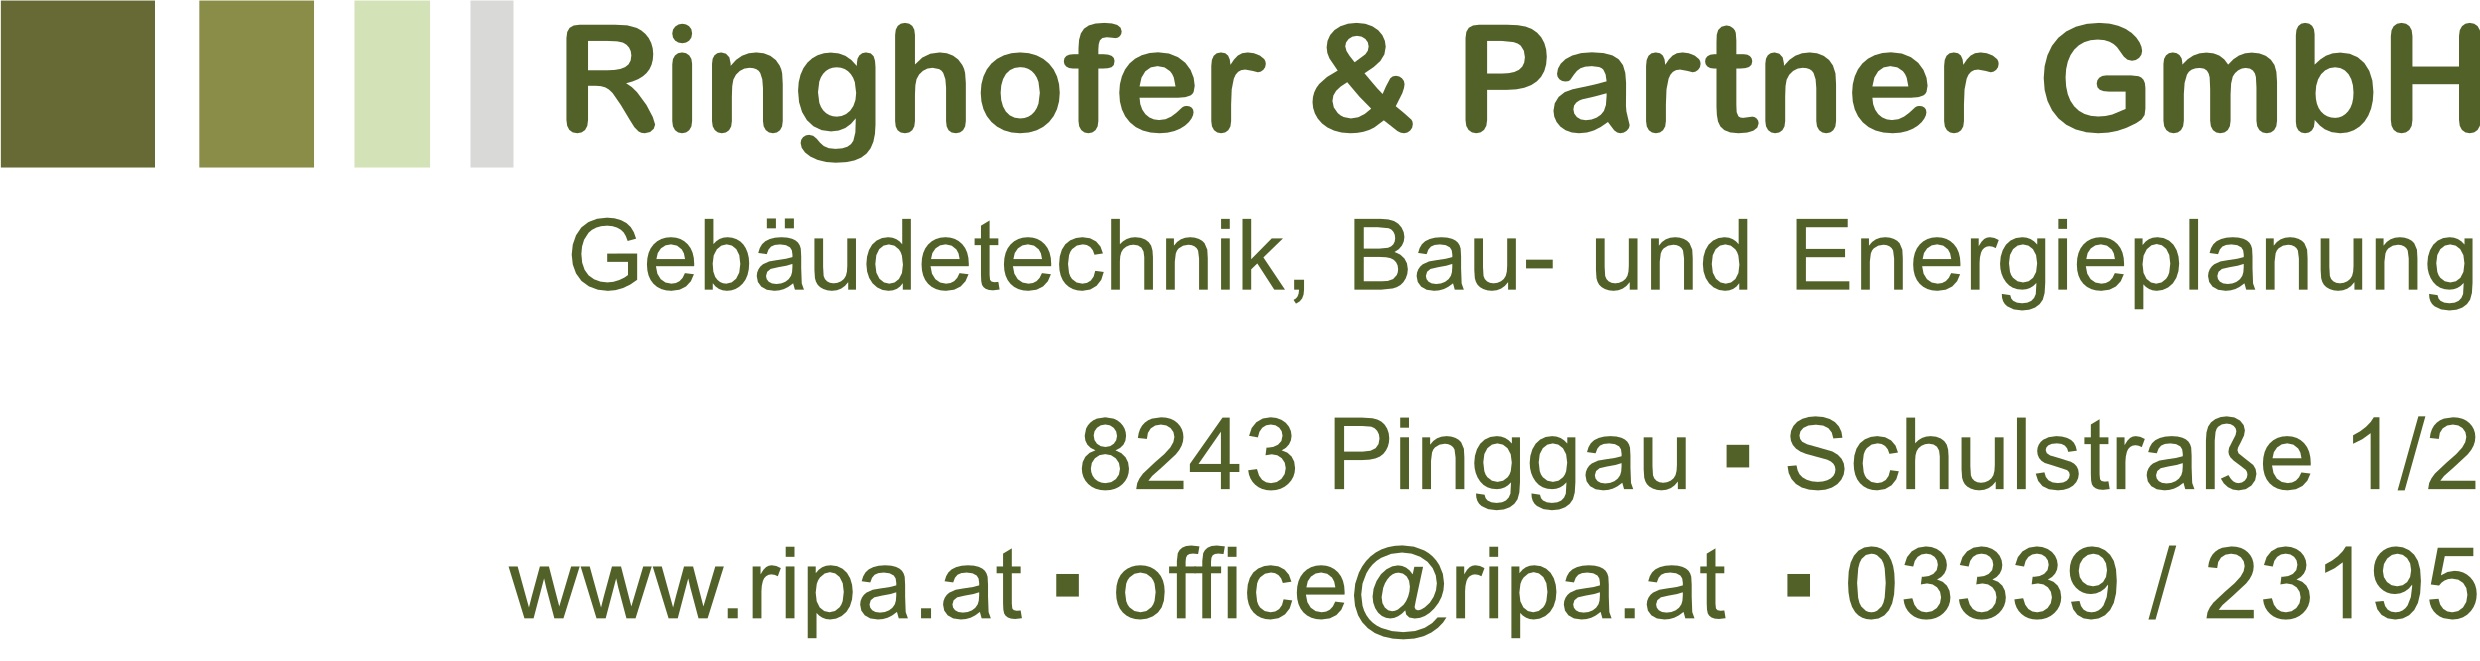 Ringhofer & Partner GmbH